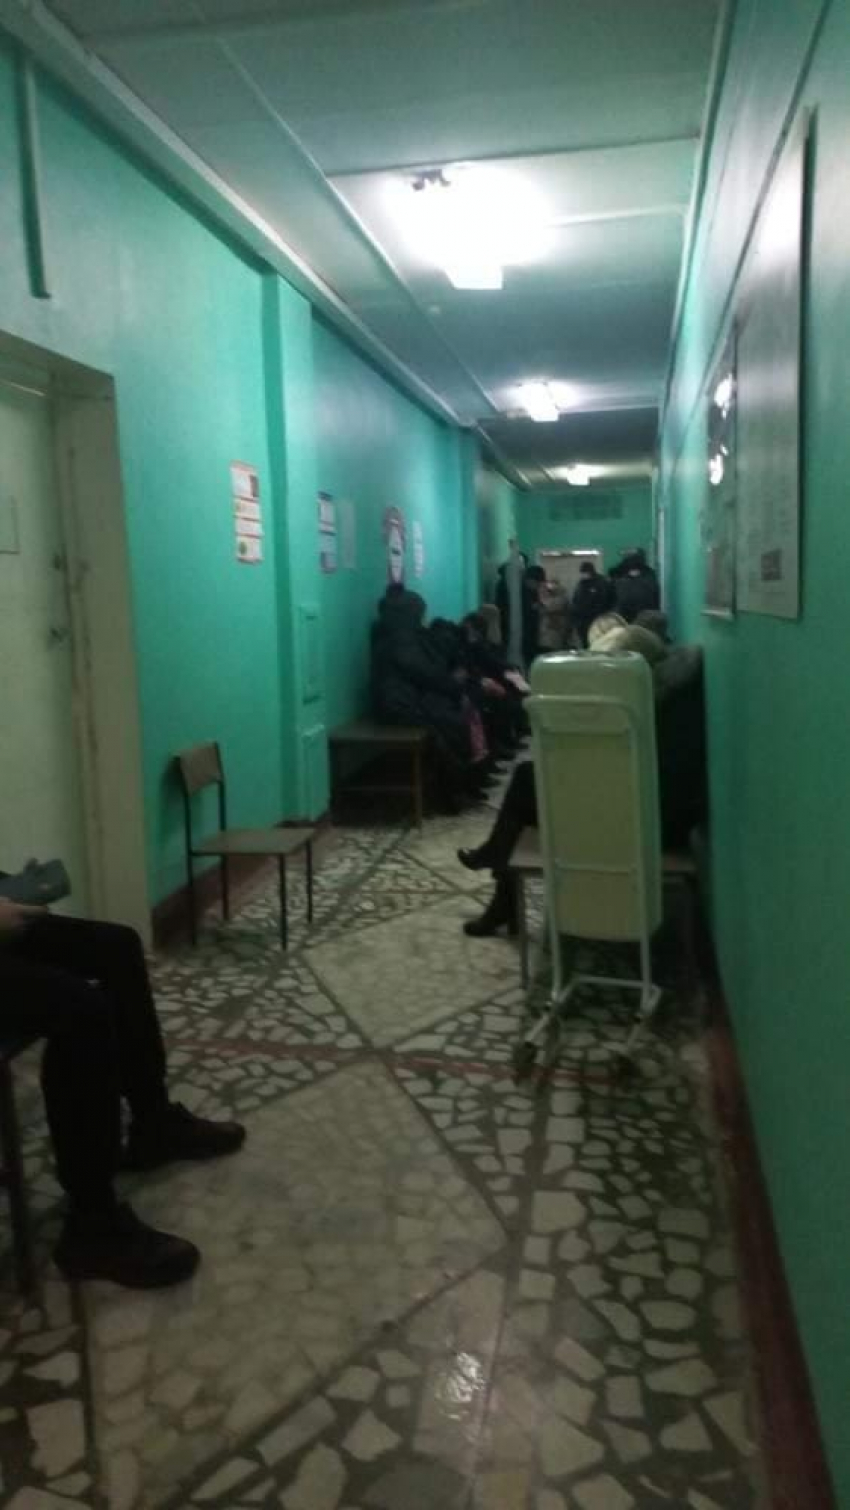 До 21:30 продлили работу врачам в Волгограде из-за эпидемии гриппа